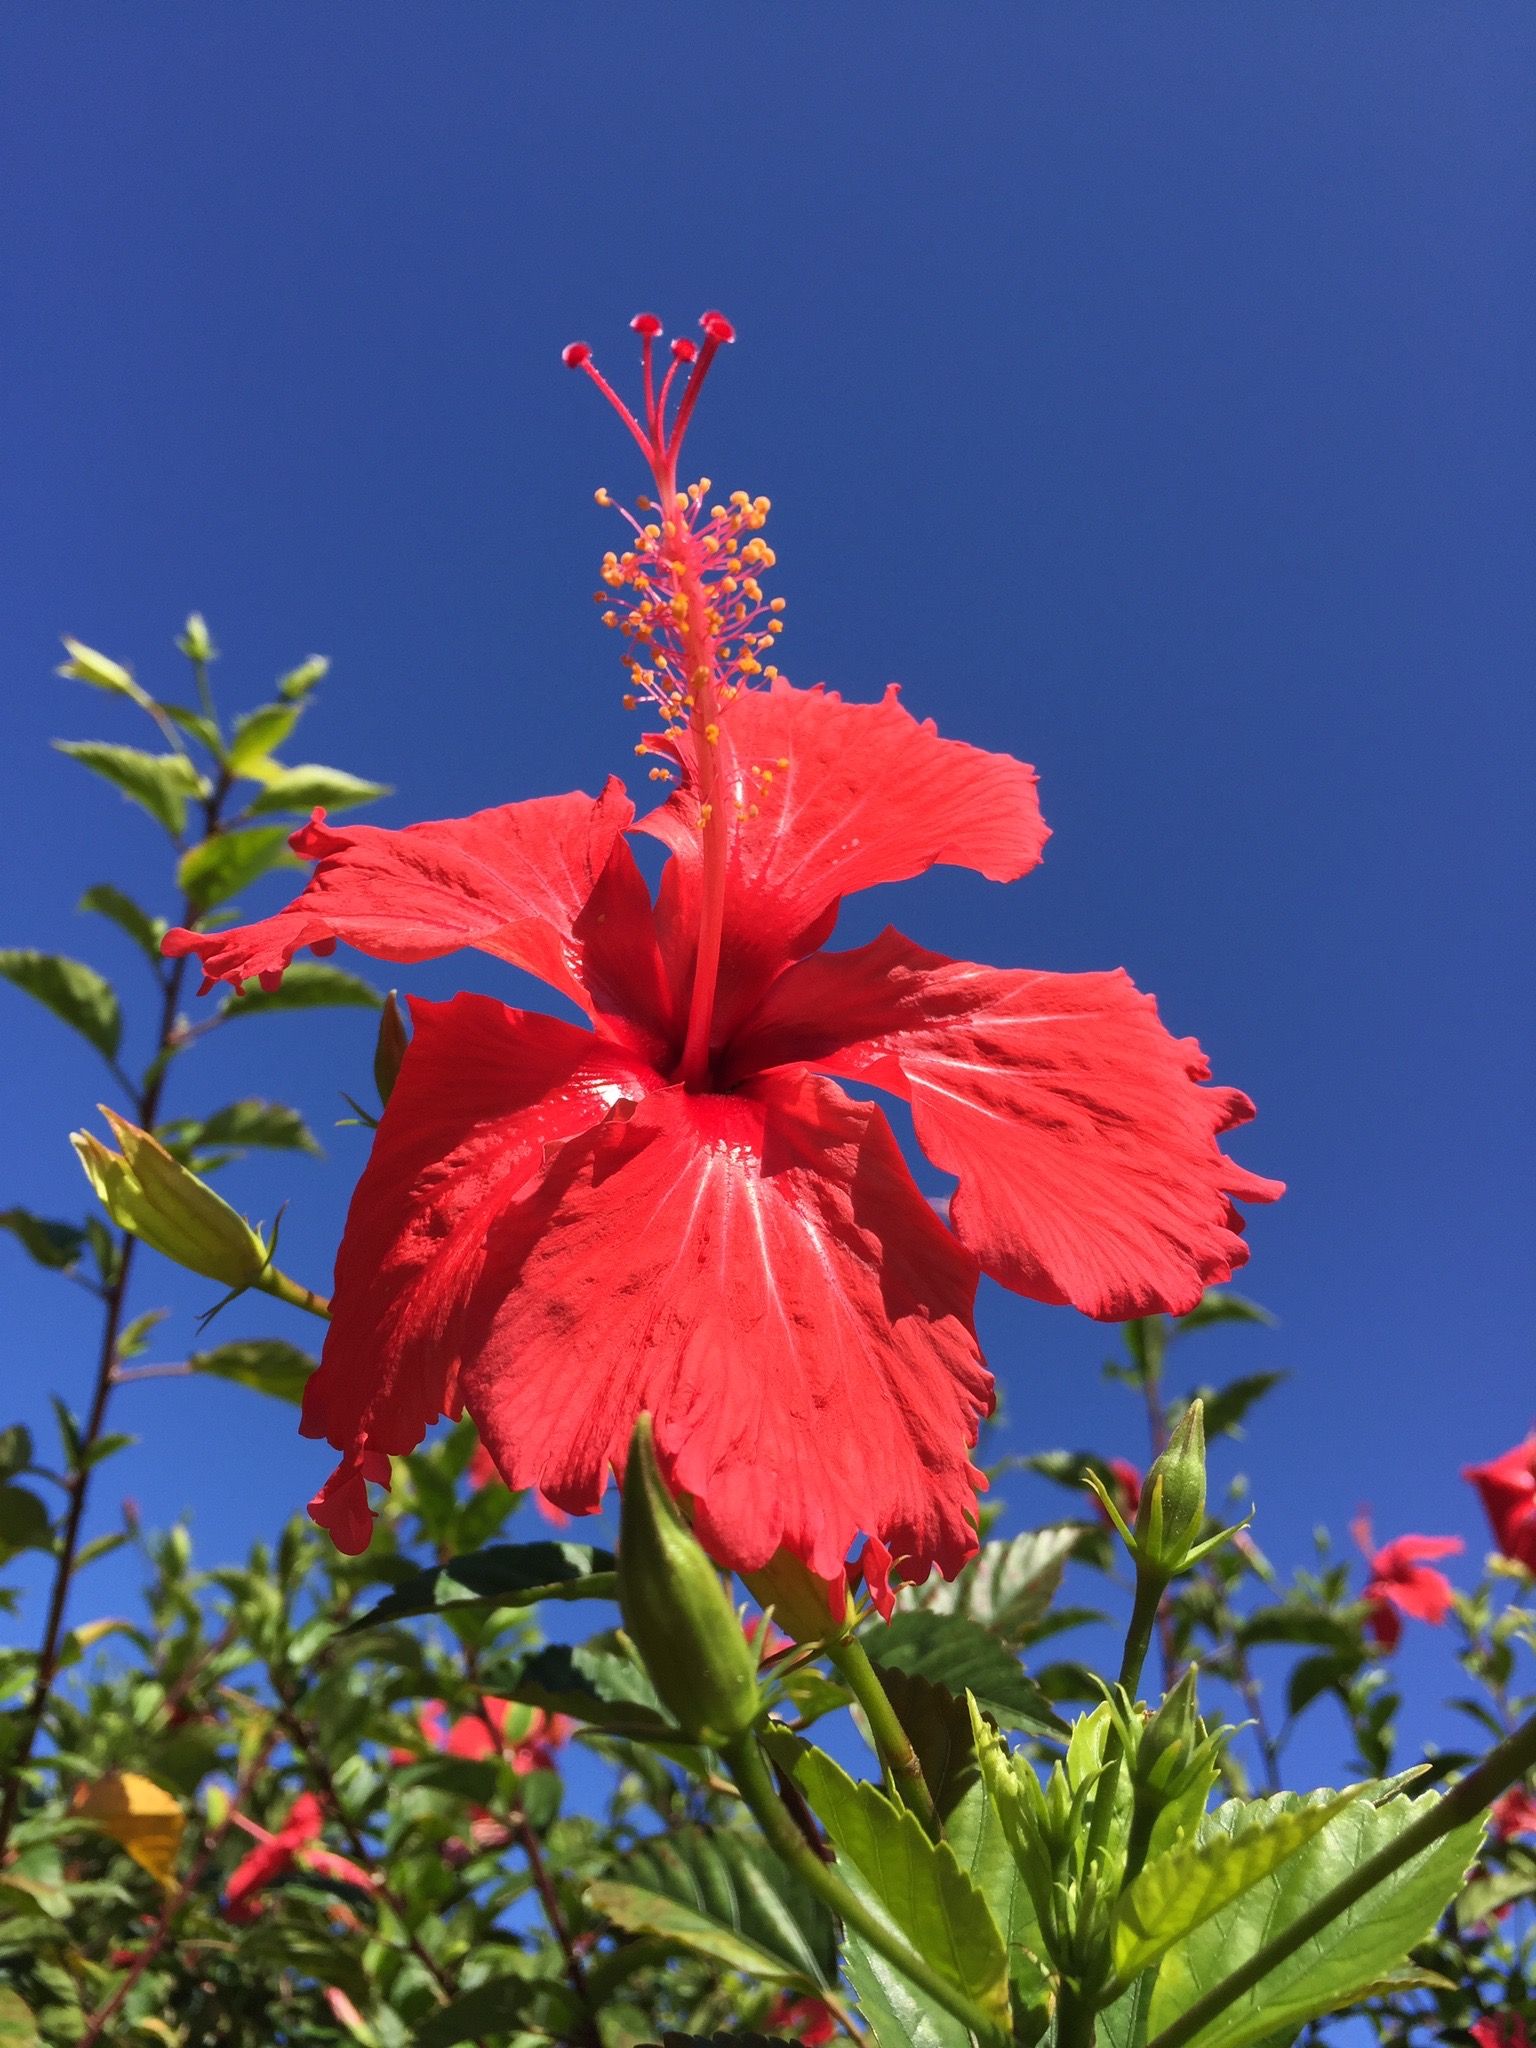 A flower on the island of Maui, Hawaii